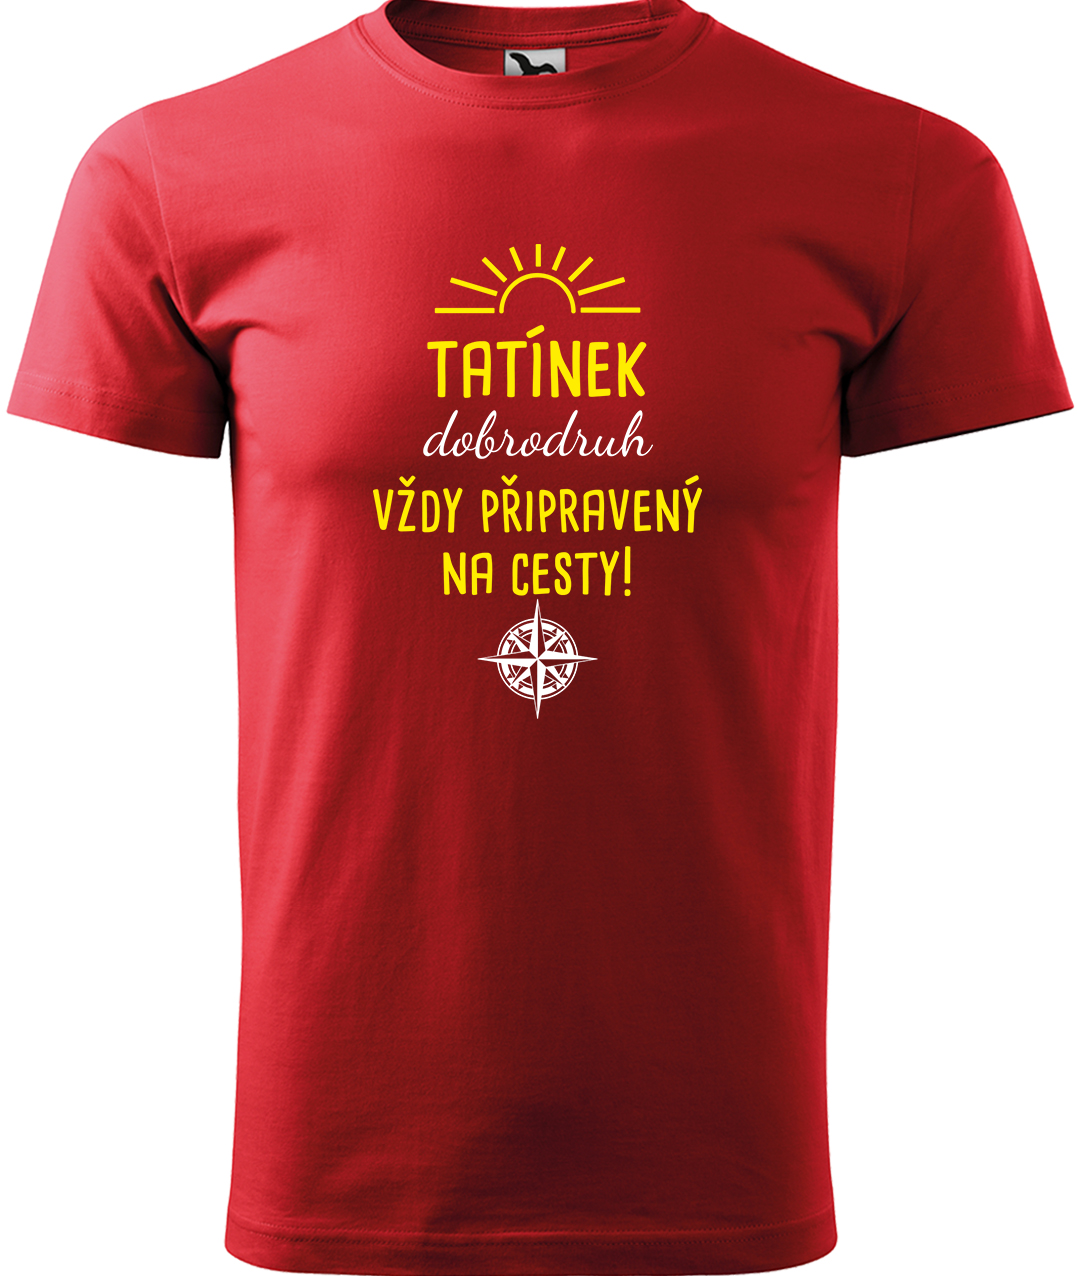 Pánské cestovatelské tričko - Tatínek dobrodruh Velikost: 3XL, Barva: Červená (07), Střih: pánský